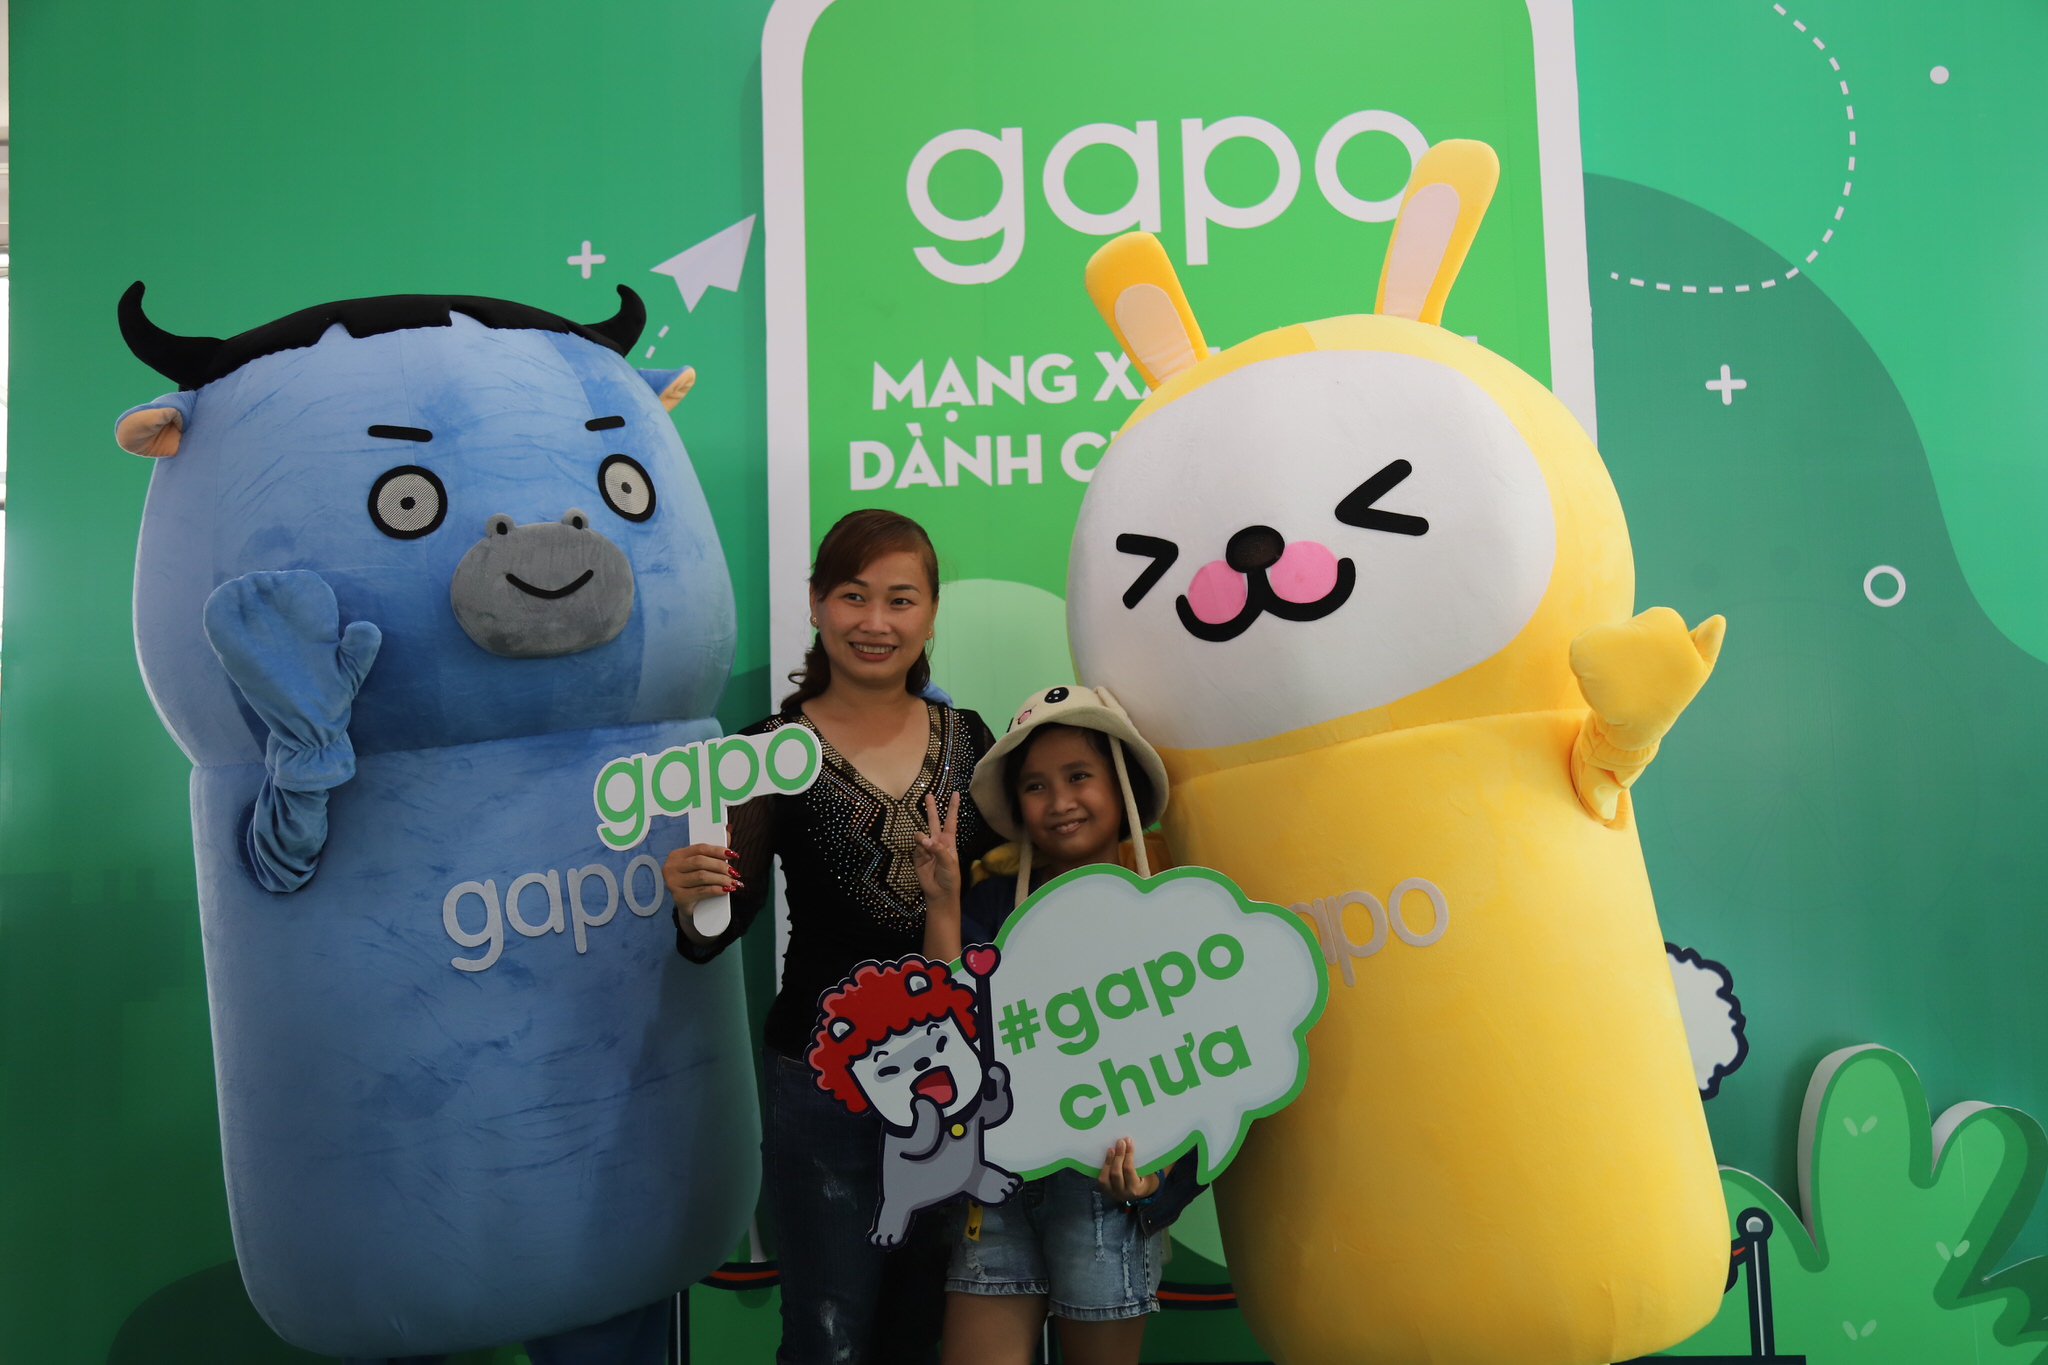 70,000 game thủ hào hứng kết bạn giao lưu bằng Gapo trong Đại hội 360mobi